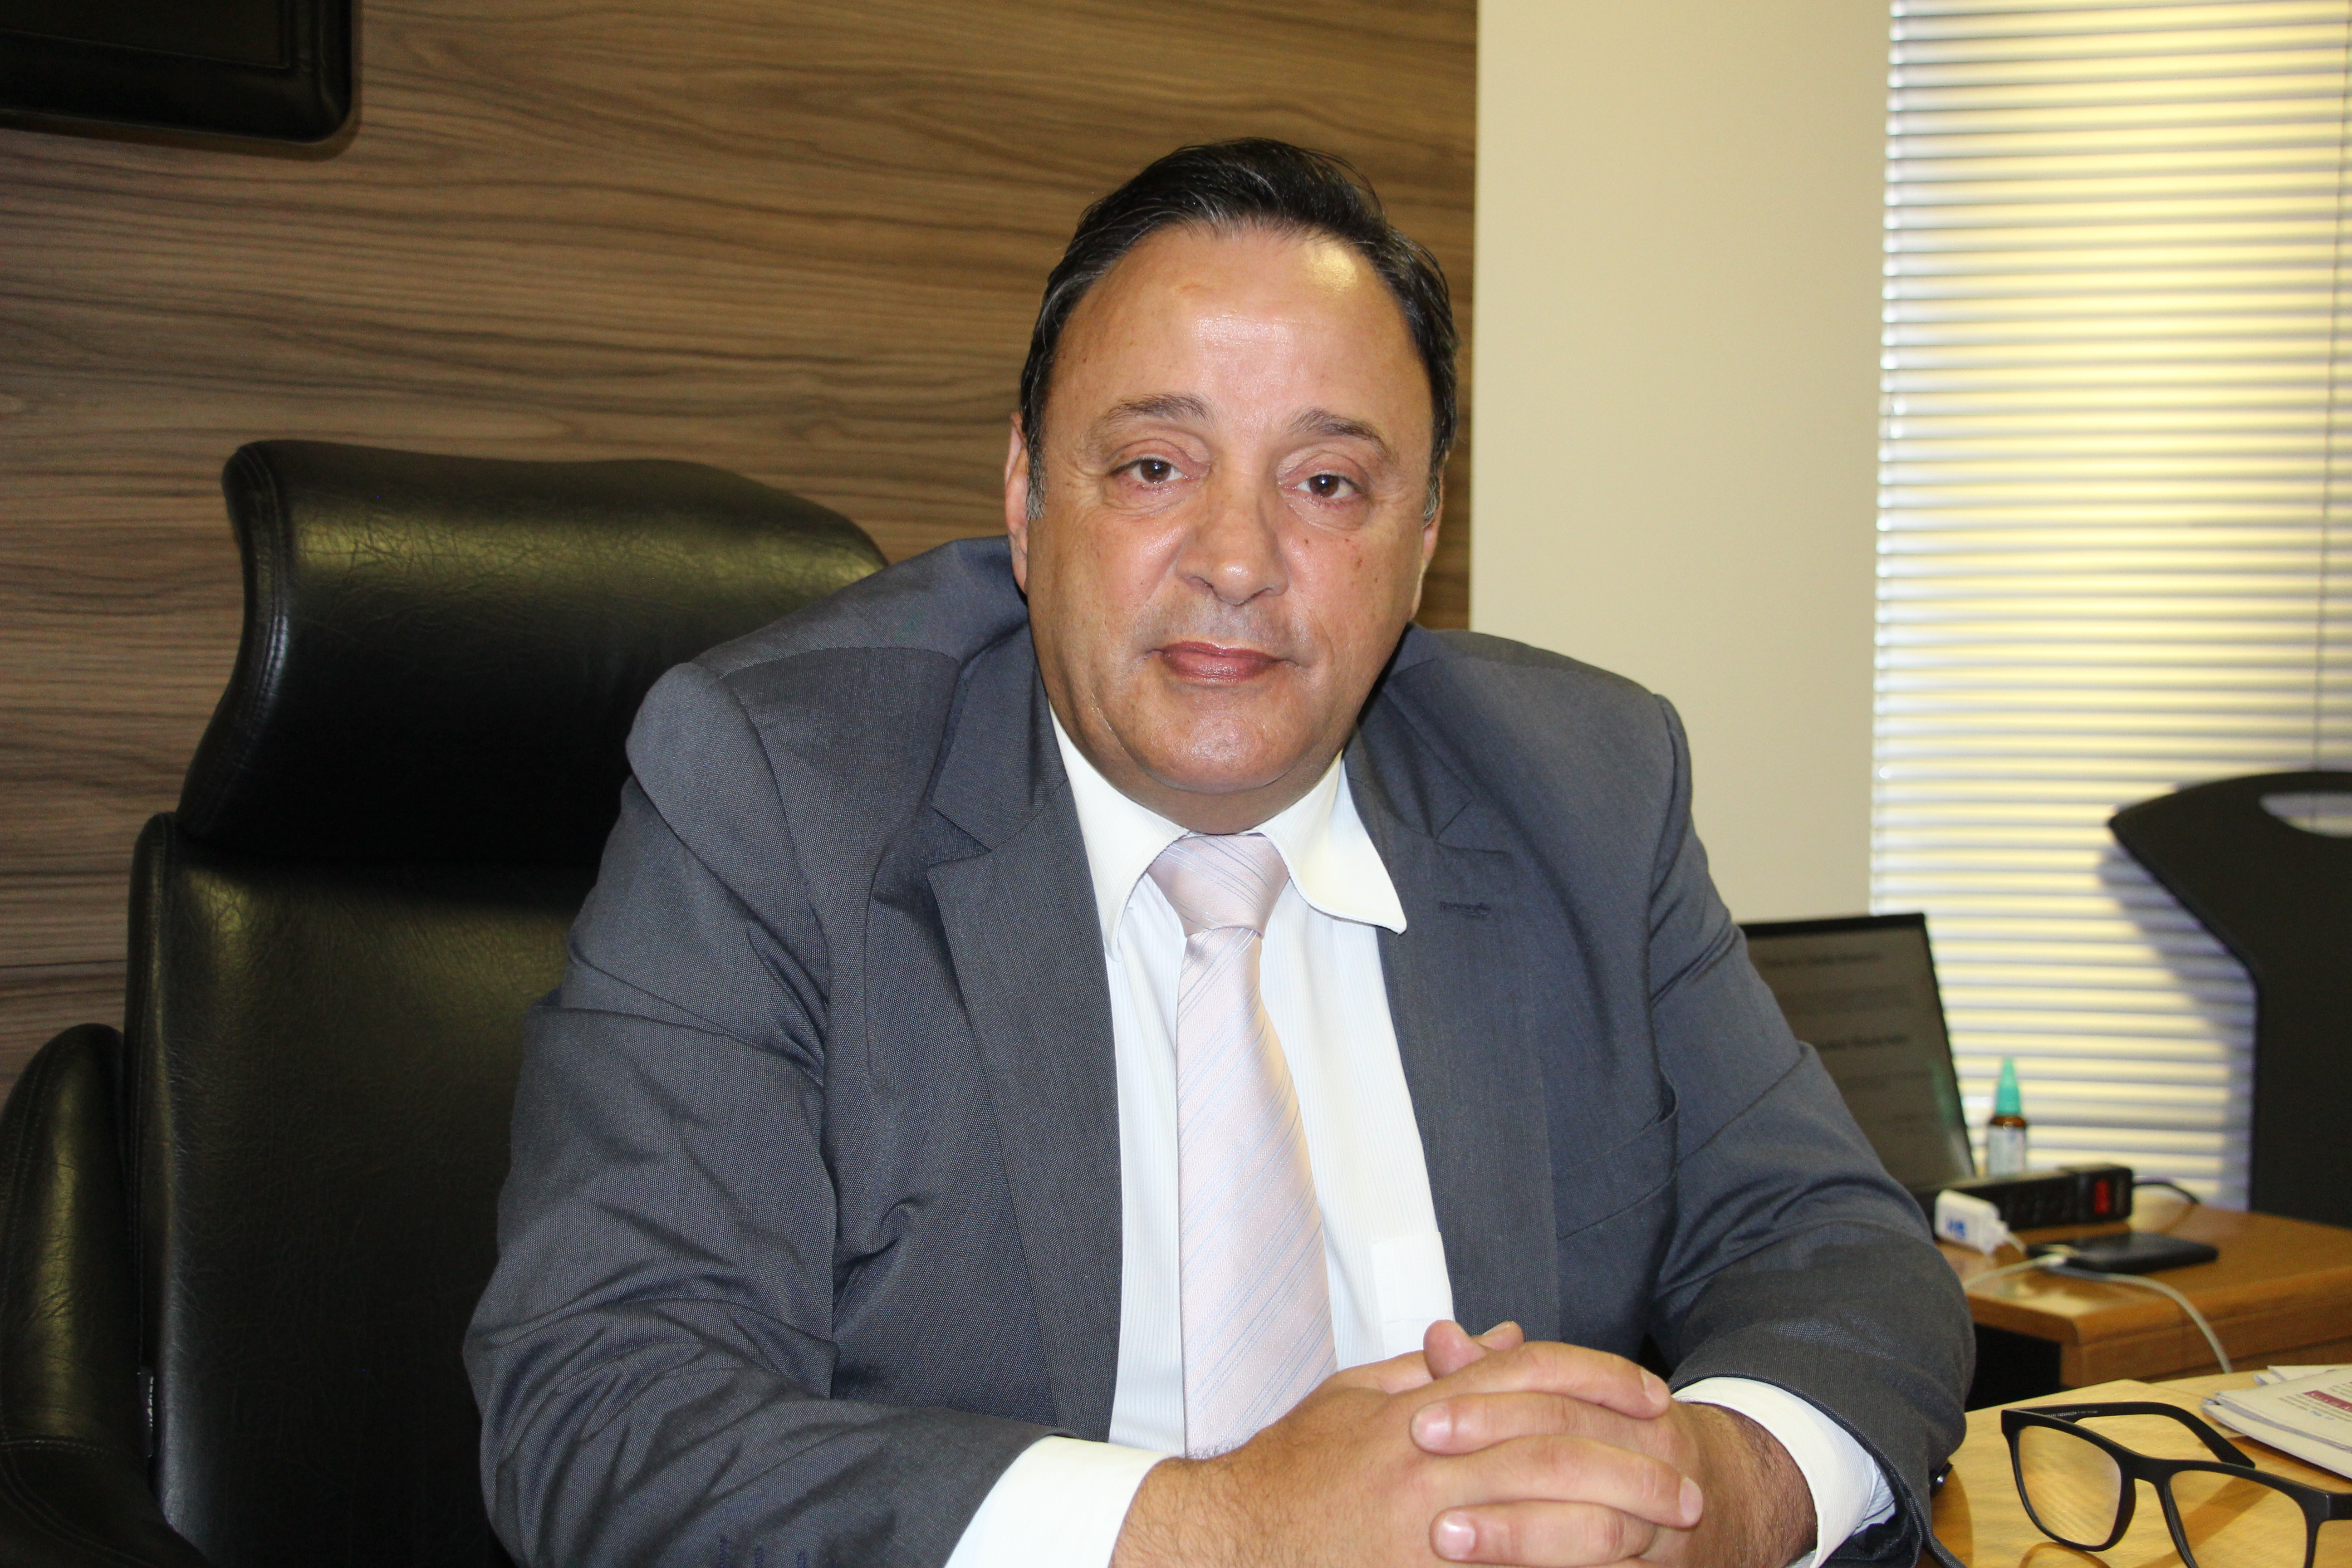 Hussein Bakri destaca atuação na Liderança do Governo e trabalho em prol de PG